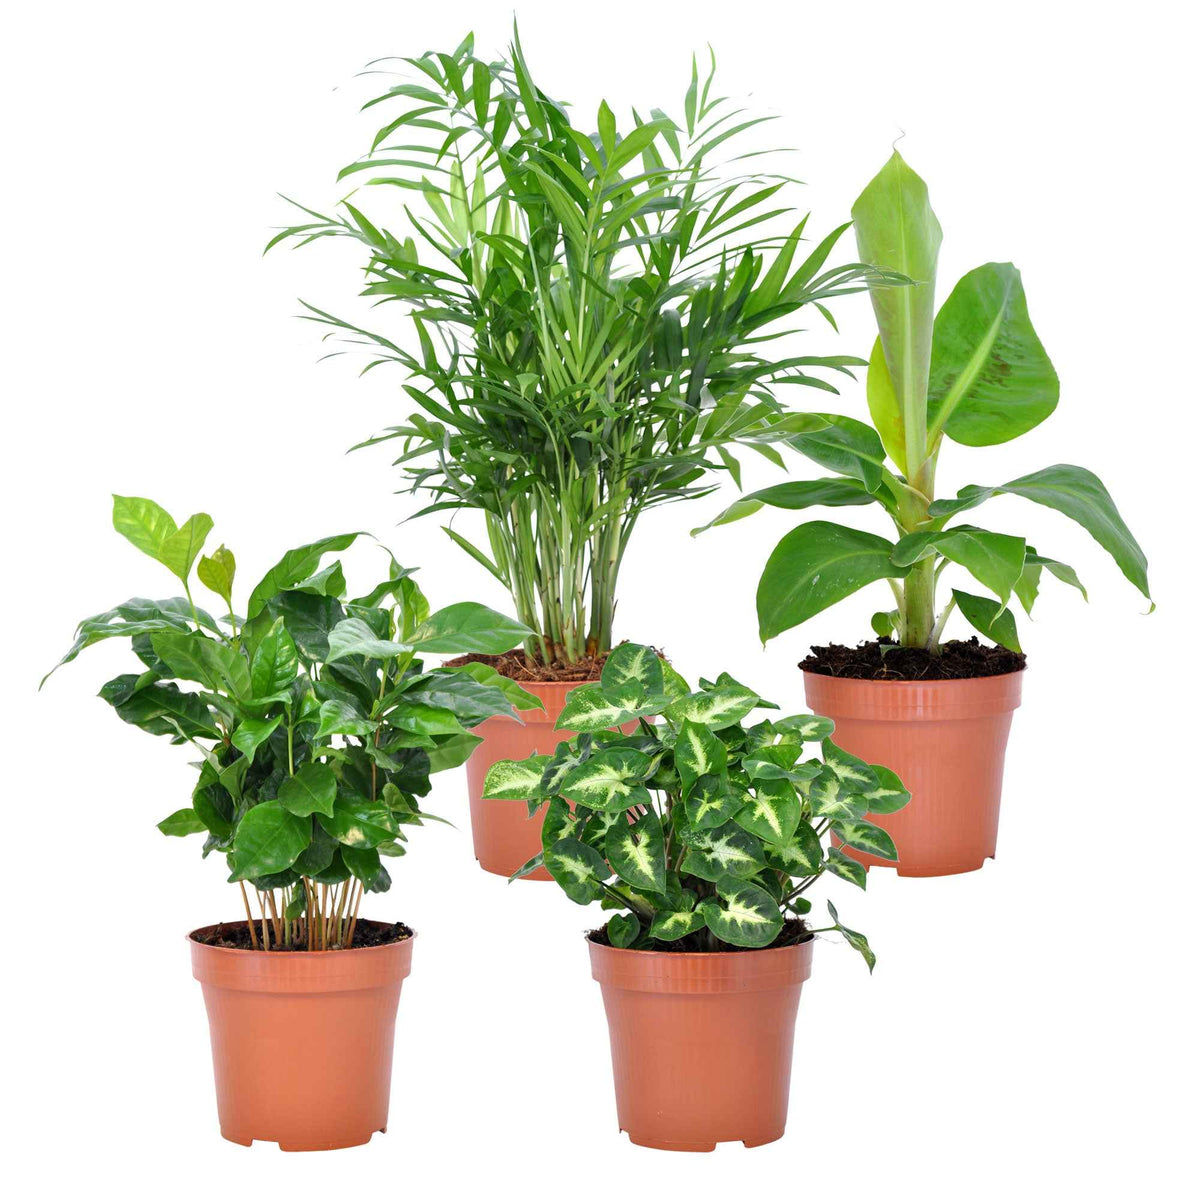 Collection de 4 plantes d'intérieur tropicales - Chamaedorea elegans, Arum syngonium, Musa, Coffea arabica - Plantes